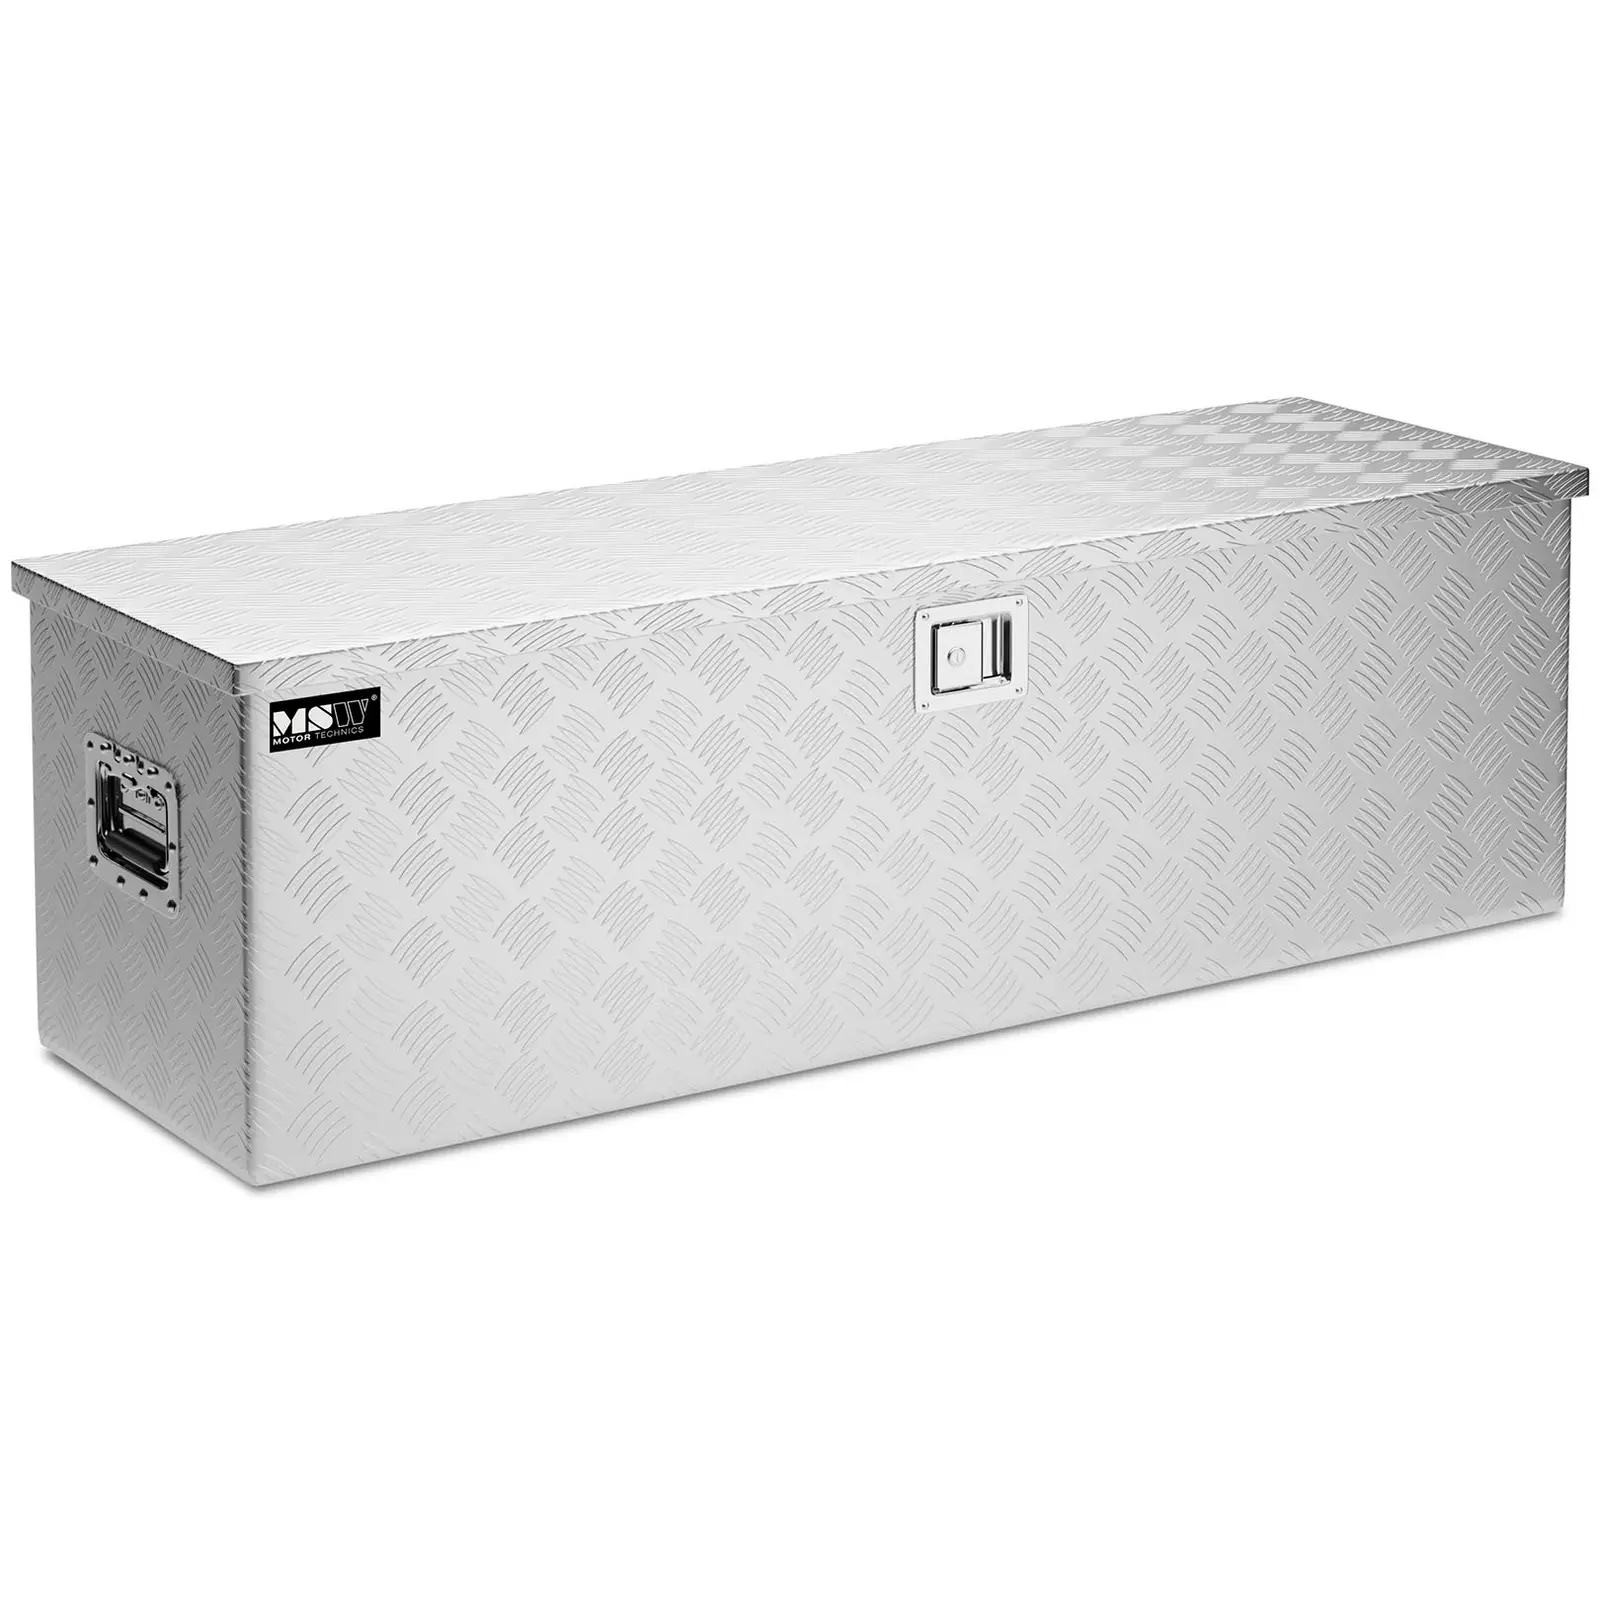 Aliuminio įrankių dėžė - 124 x 38 x 38 cm - 150 l